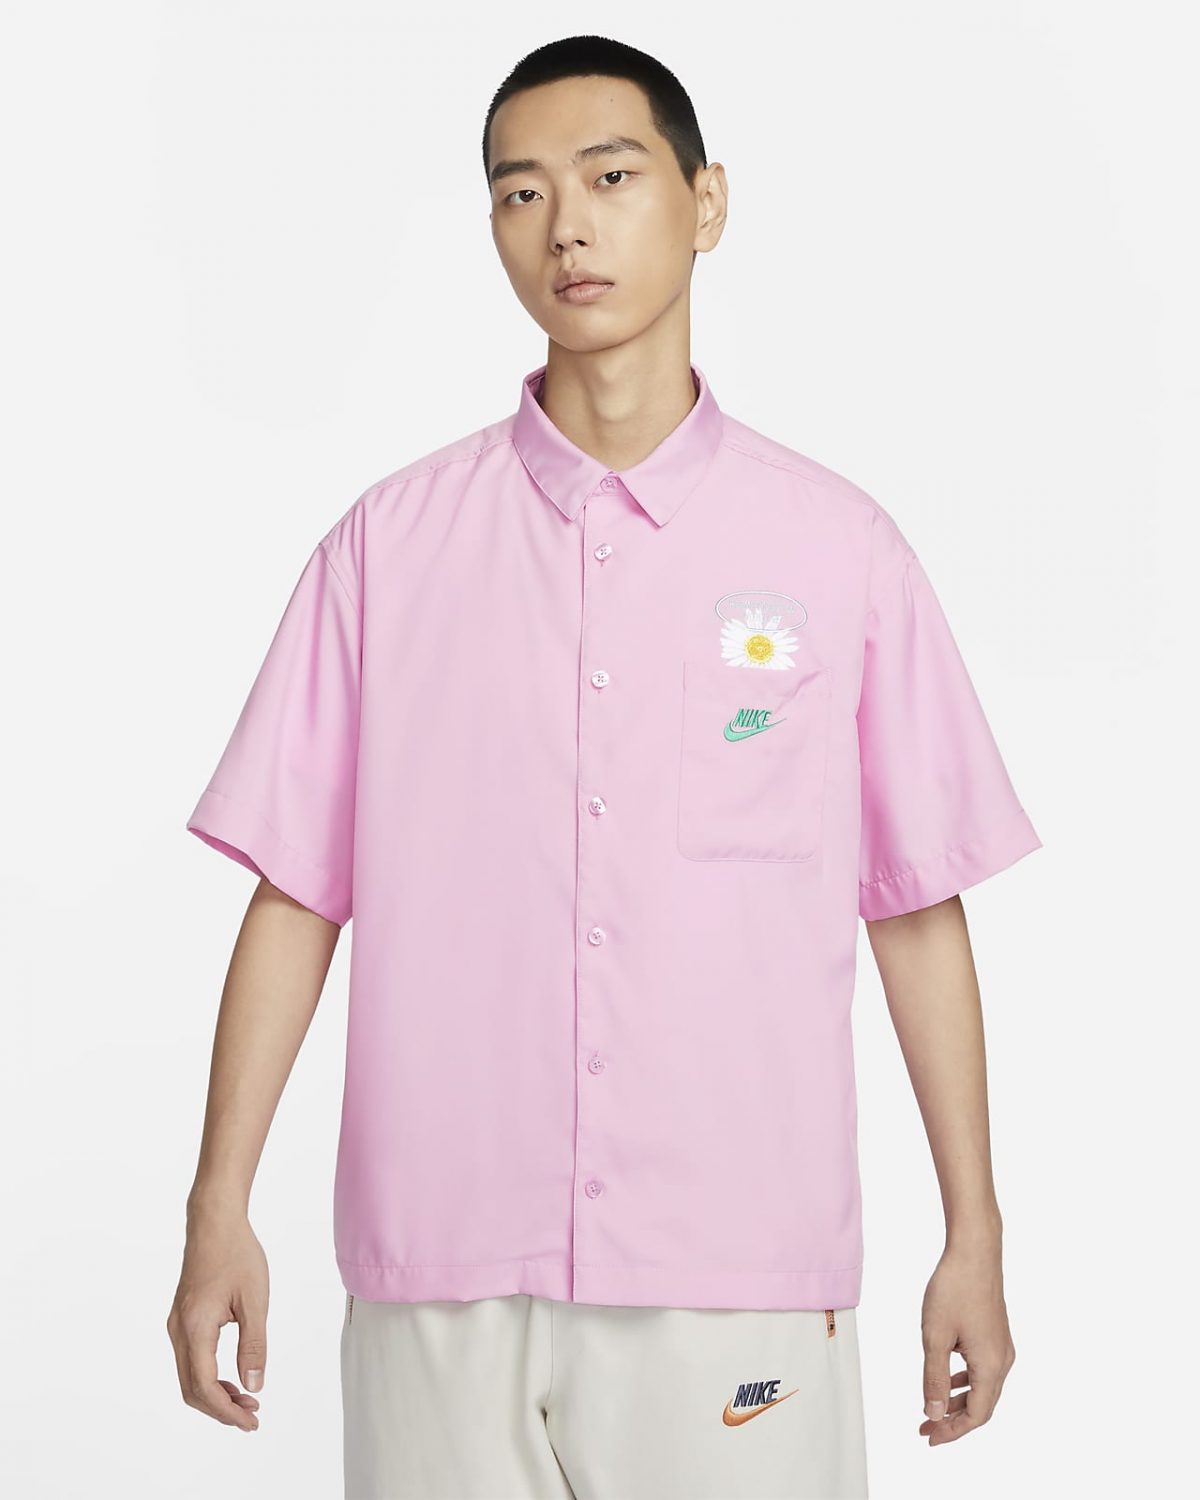 Мужская рубашка Nike Sportswear розовая фото